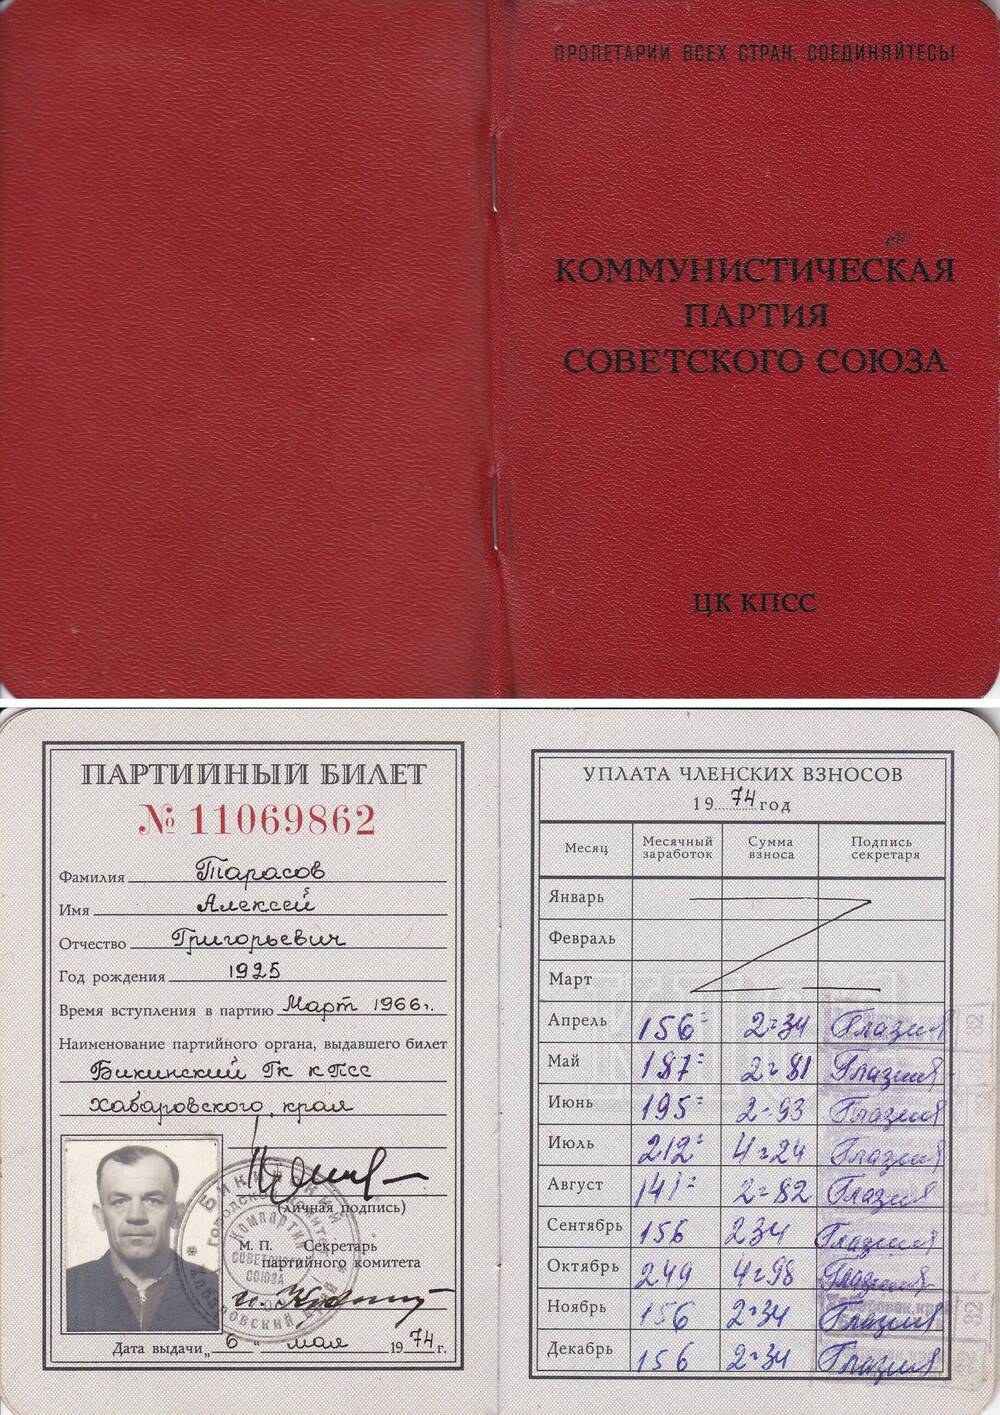 Партийный билет №11069862 члена КПСС, Тарасова А.Г, Ветерана войны, жителя Бикина.